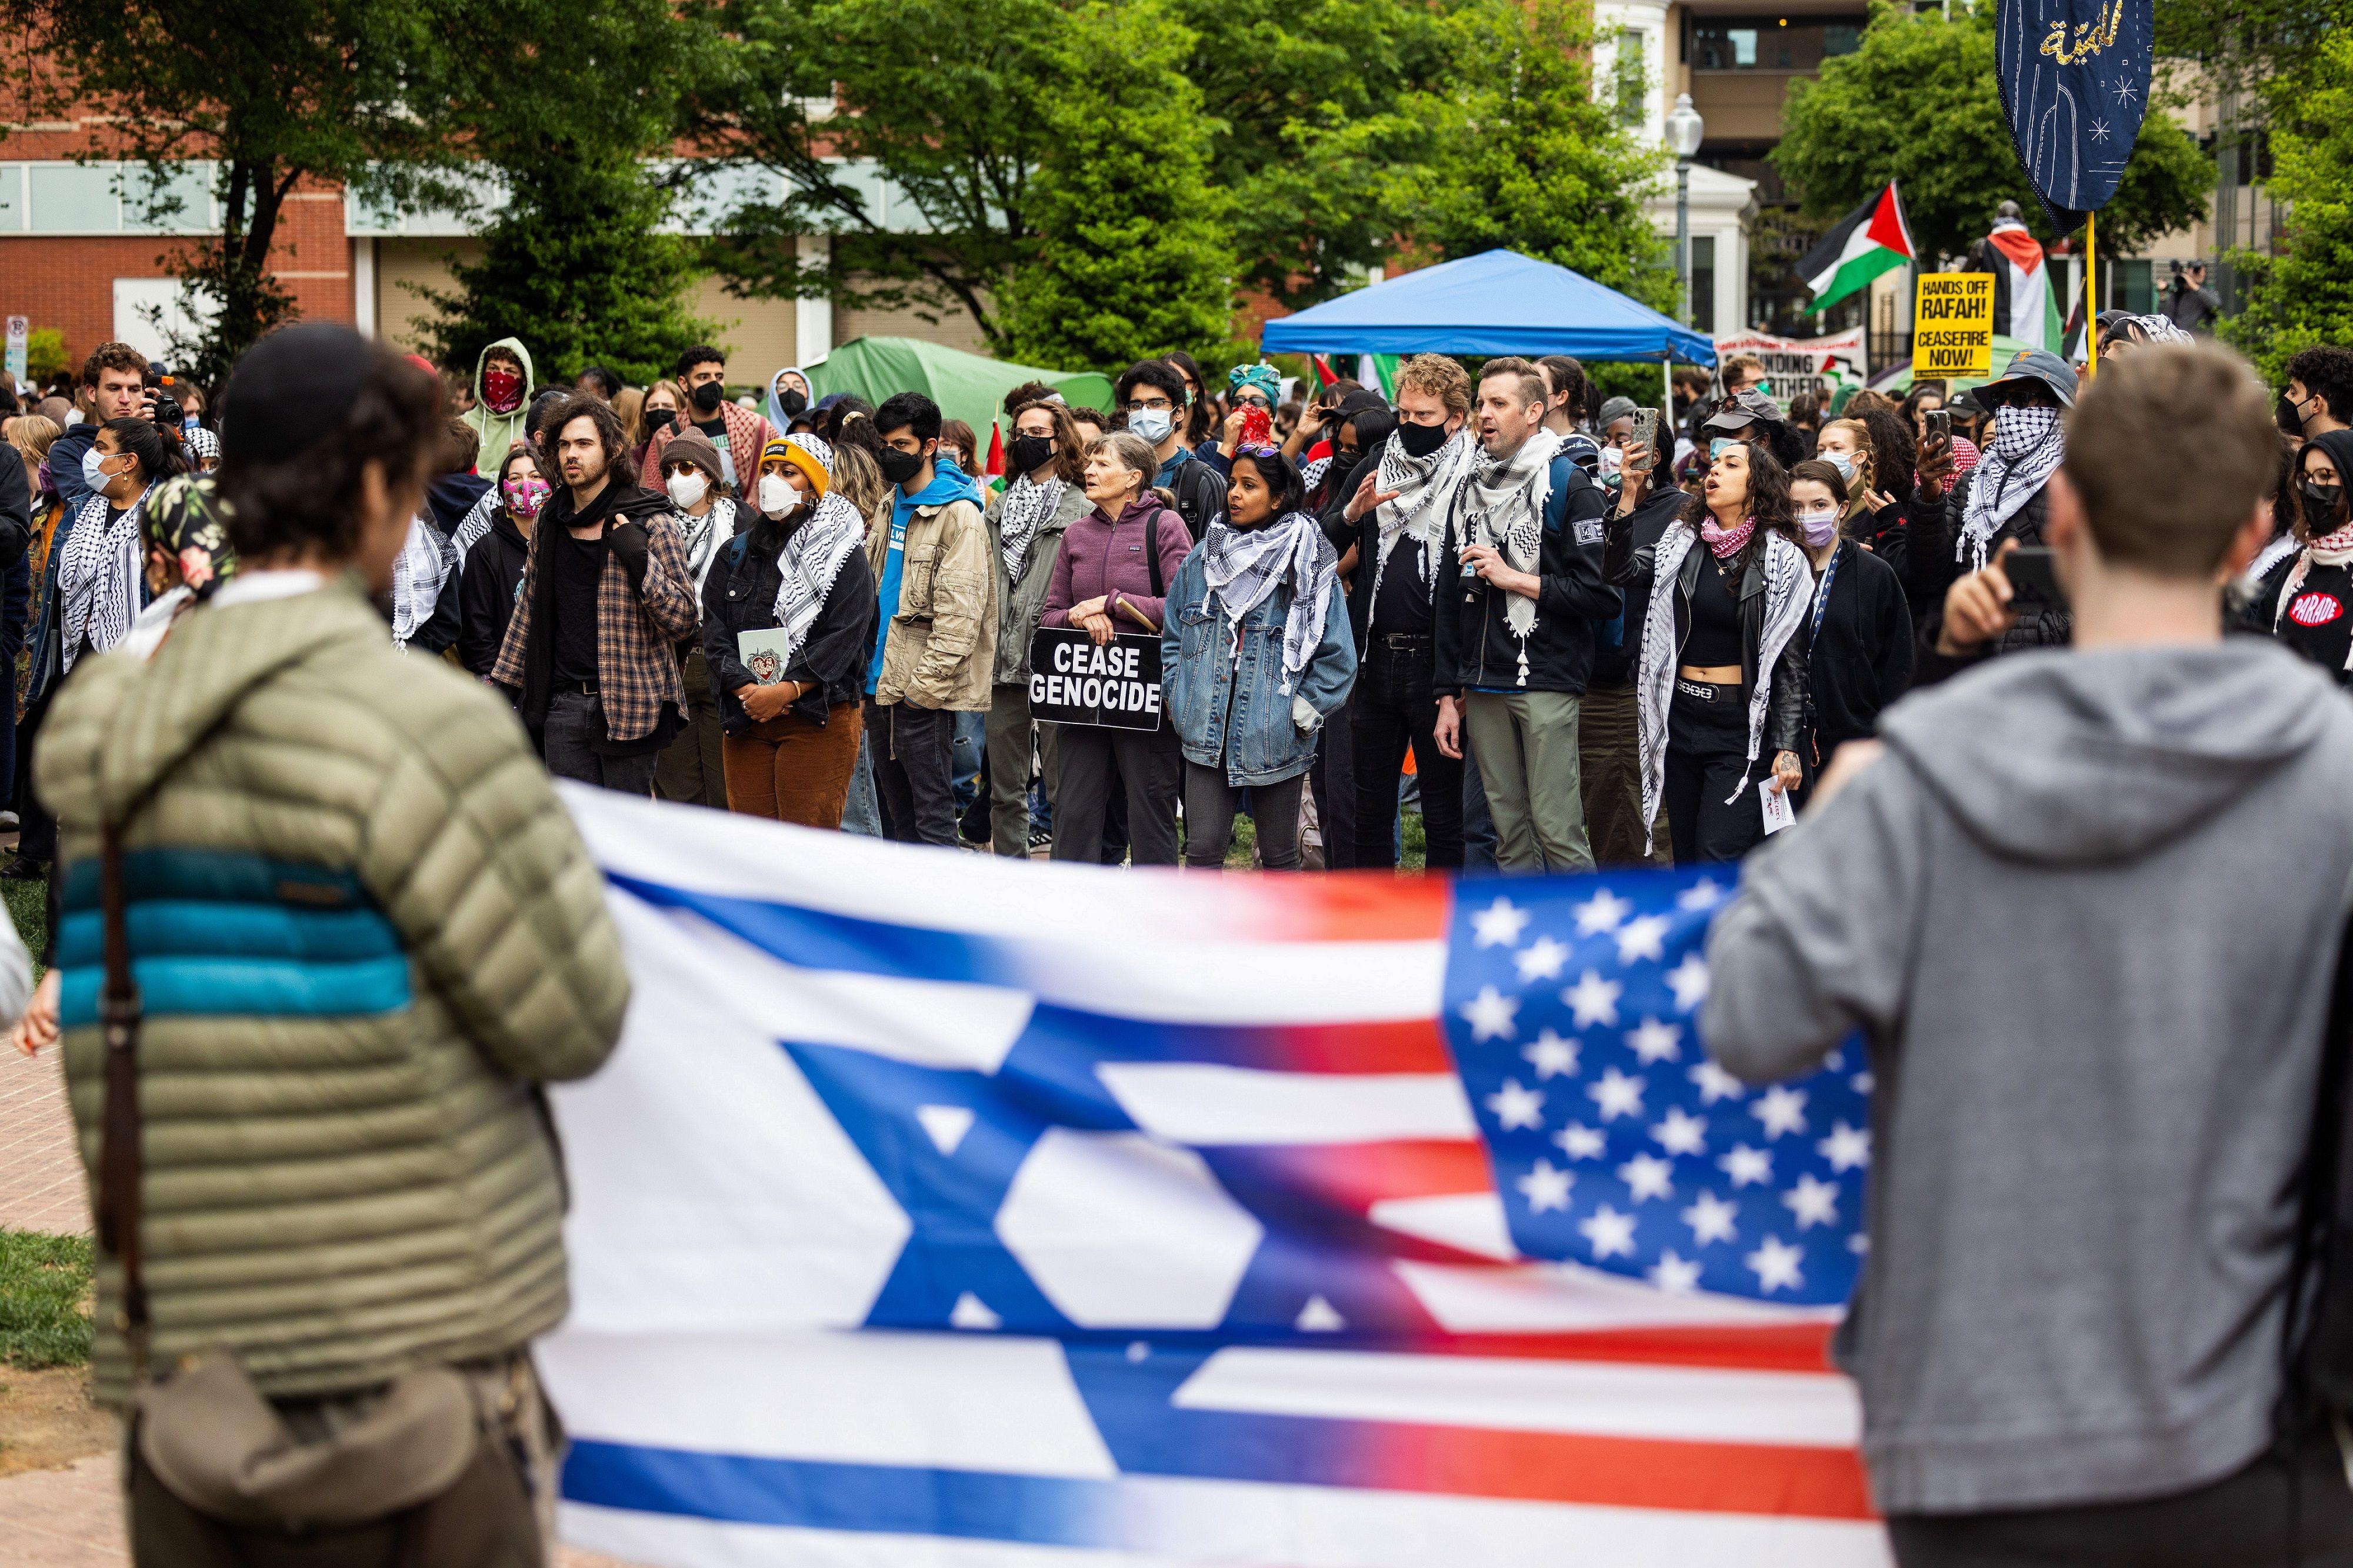 اثنان من أنصار إسرائيل يحملان العلم الأمريكي والإسرائيلي أمام المتظاهرين المؤيدين للفلسطينيين في جامعة جورج واشنطن